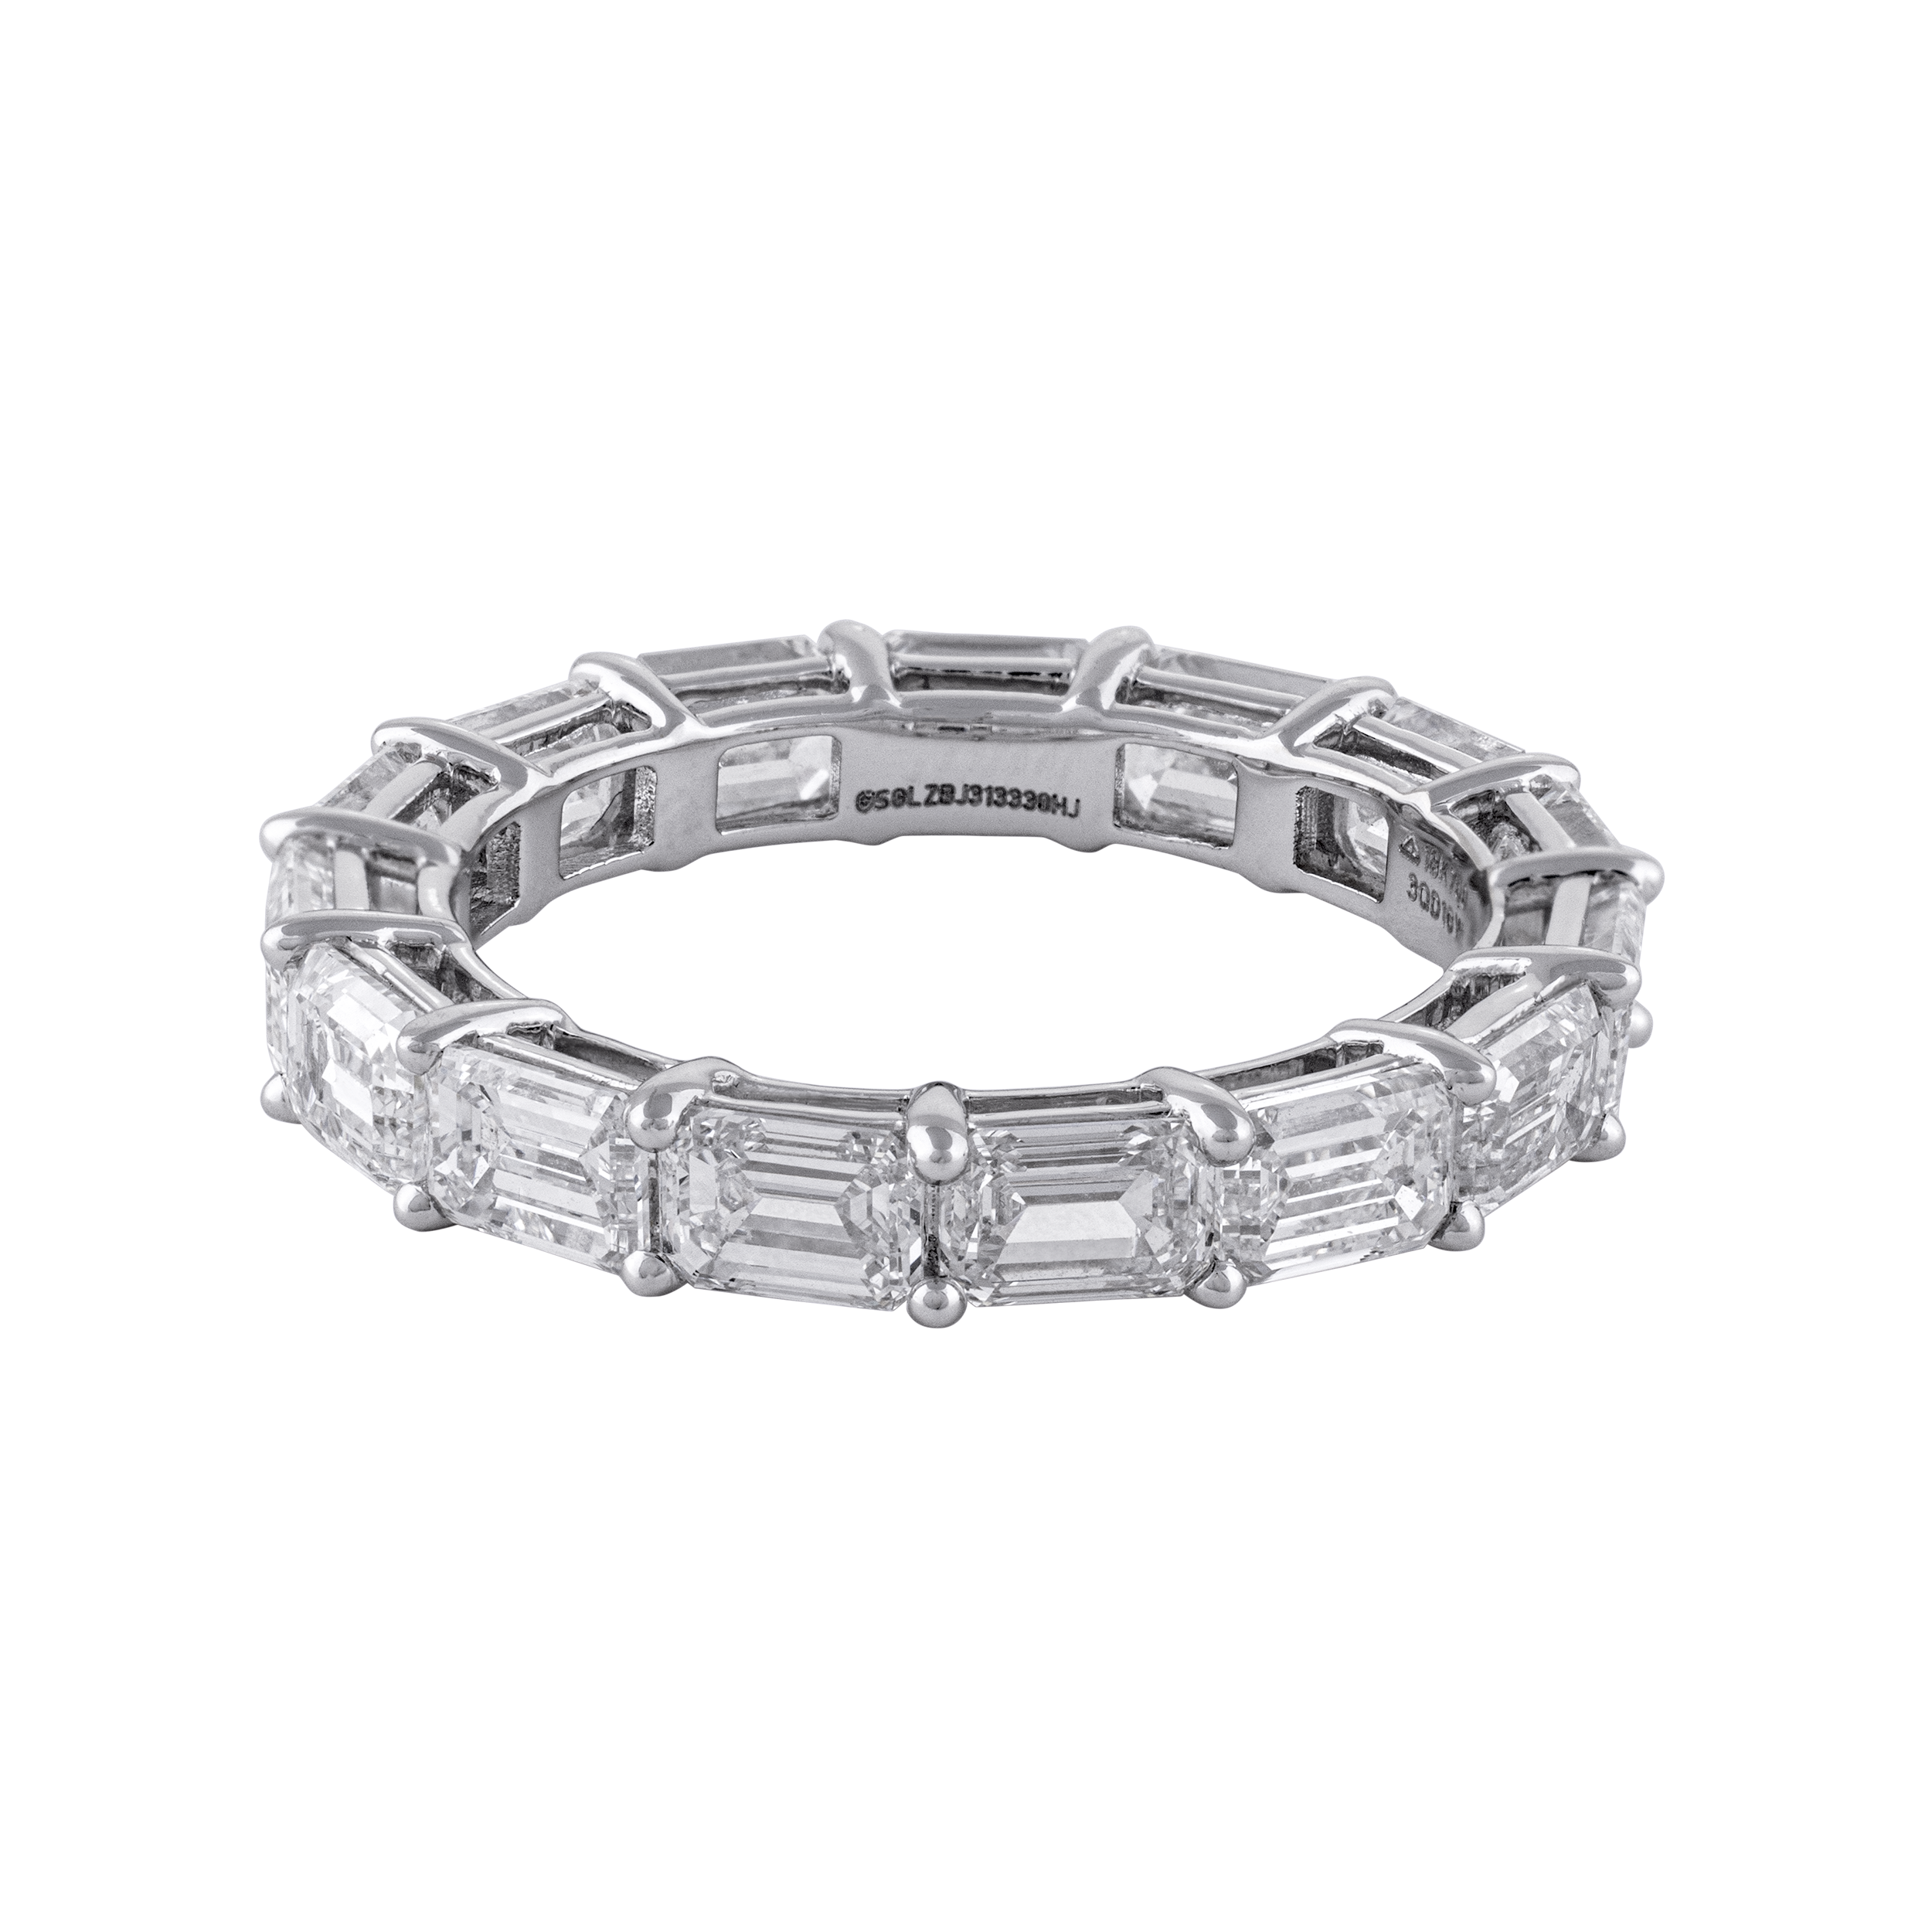 Solitaire Lab Grown Diamond Ring | SKU: 0019363004